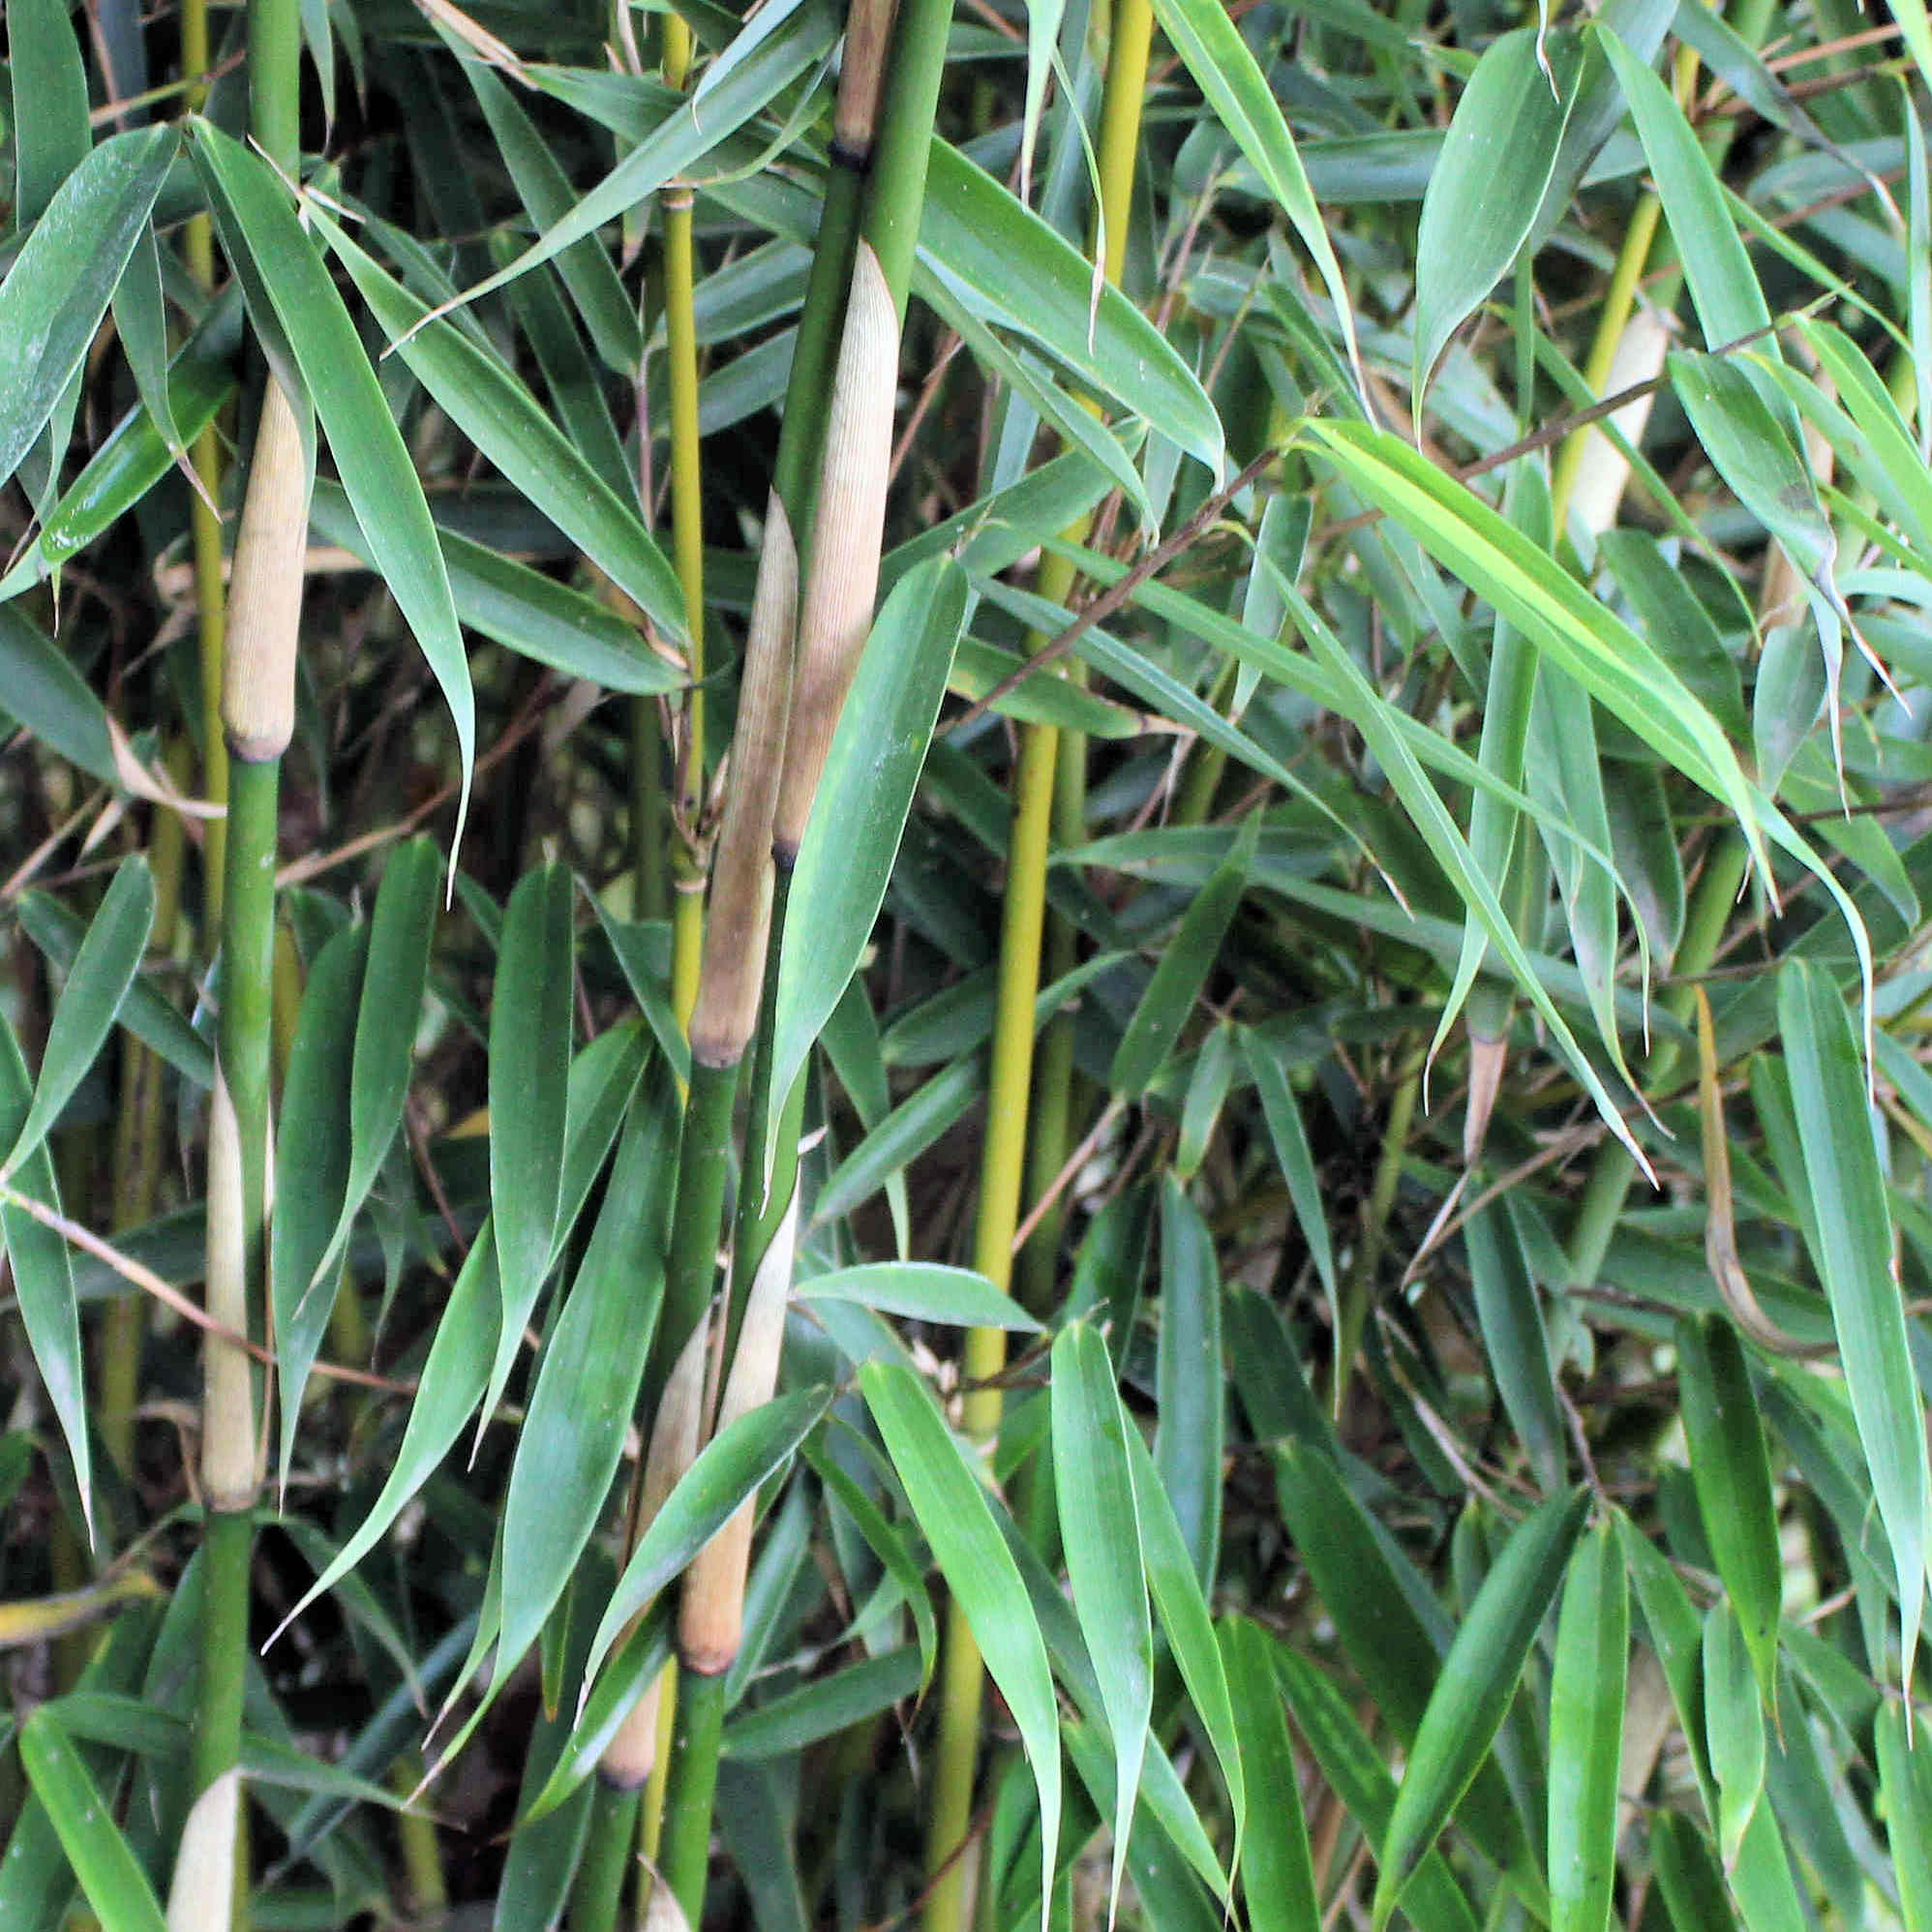 groenblijvende bamboe plant die niet woekert